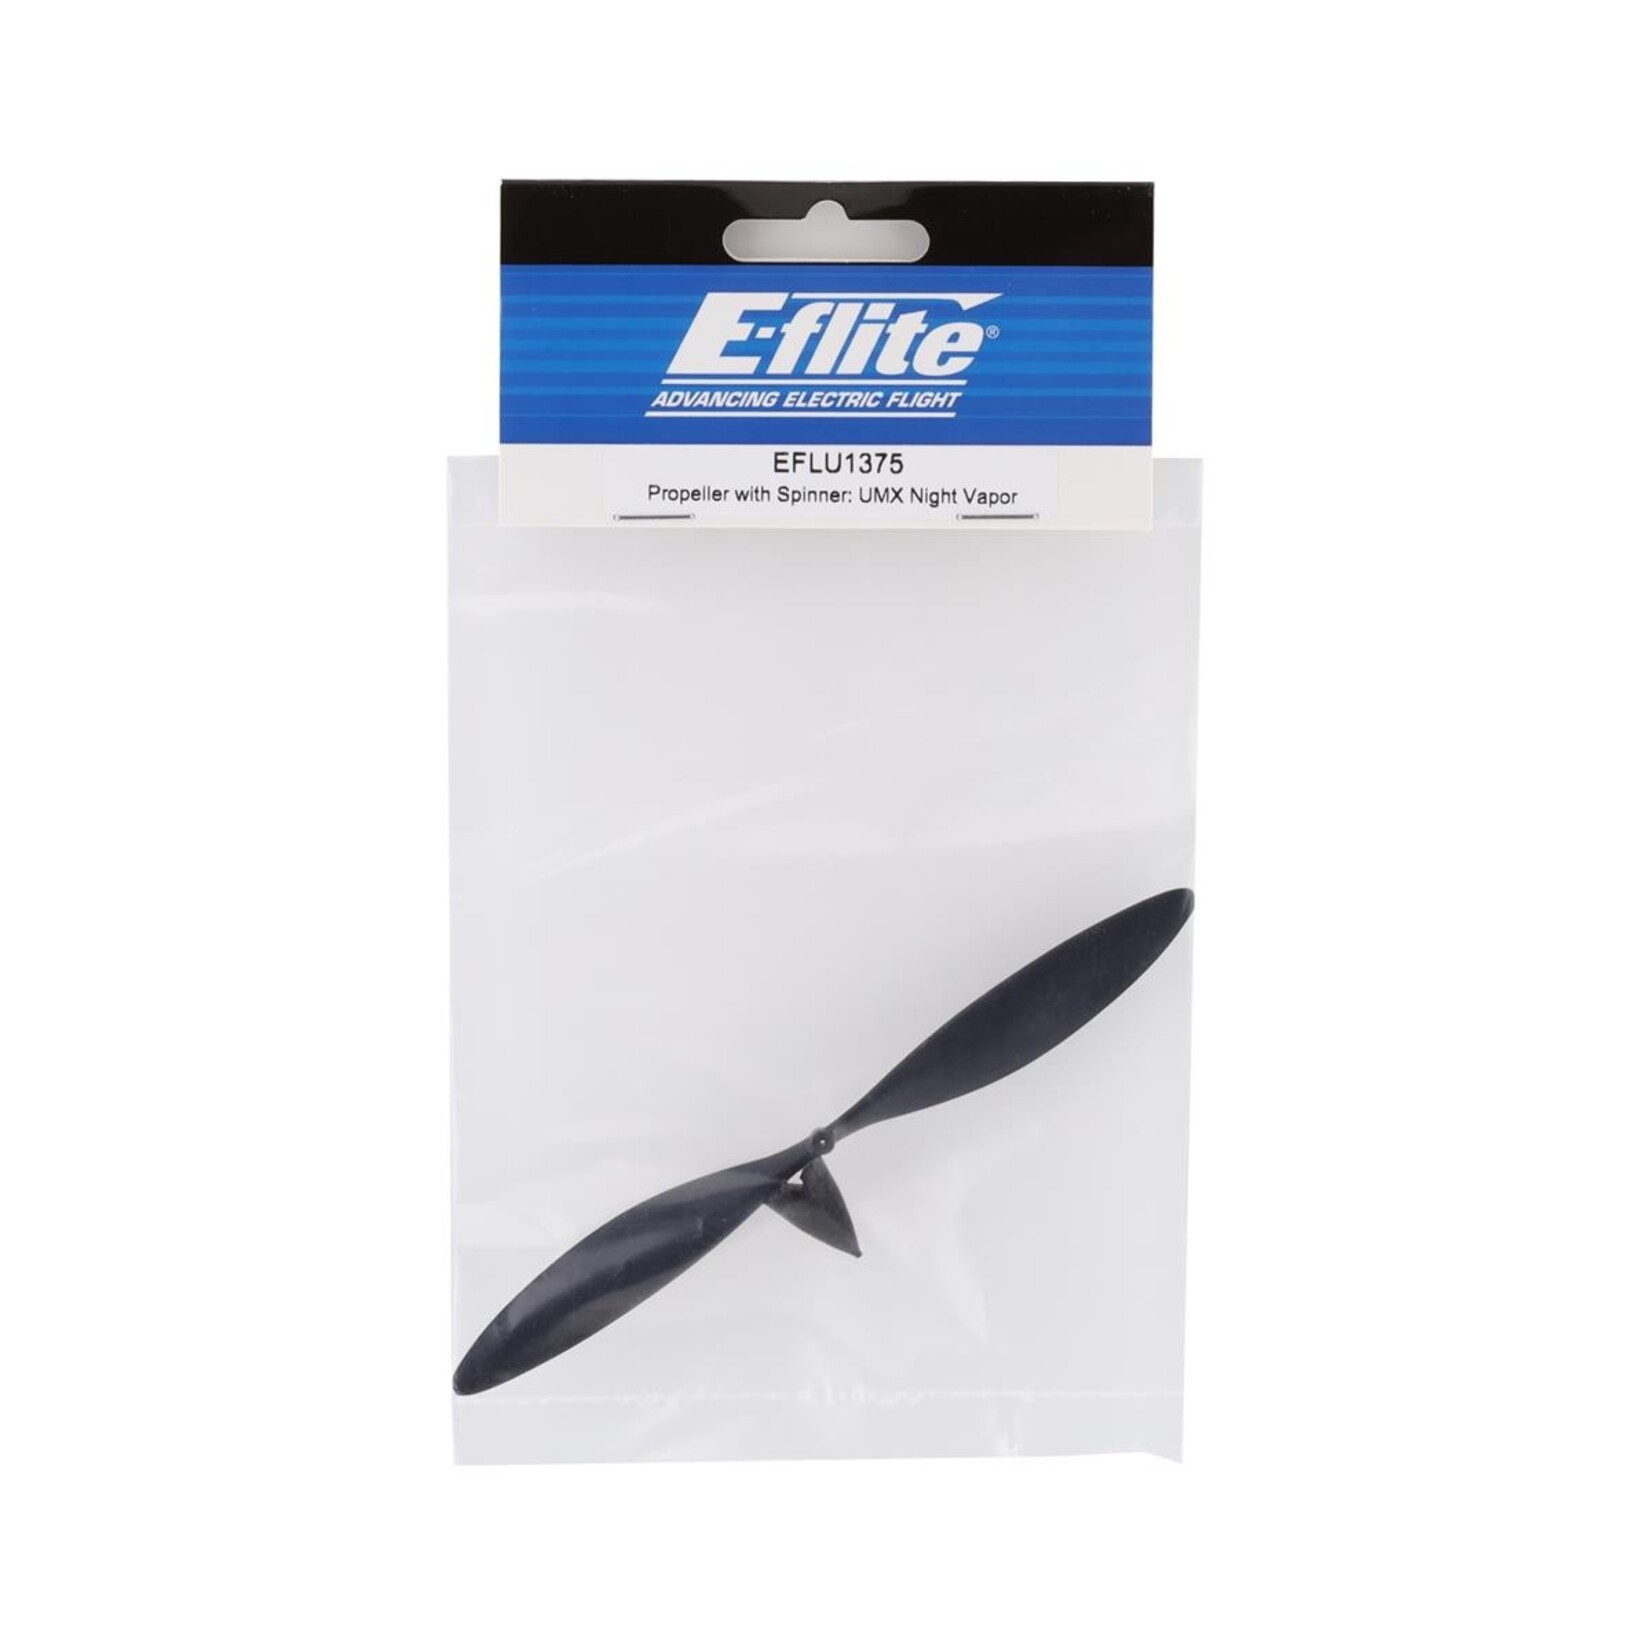 E-flite E-flite UMX Night Vapor Propeller w/Spinner #EFLU1375